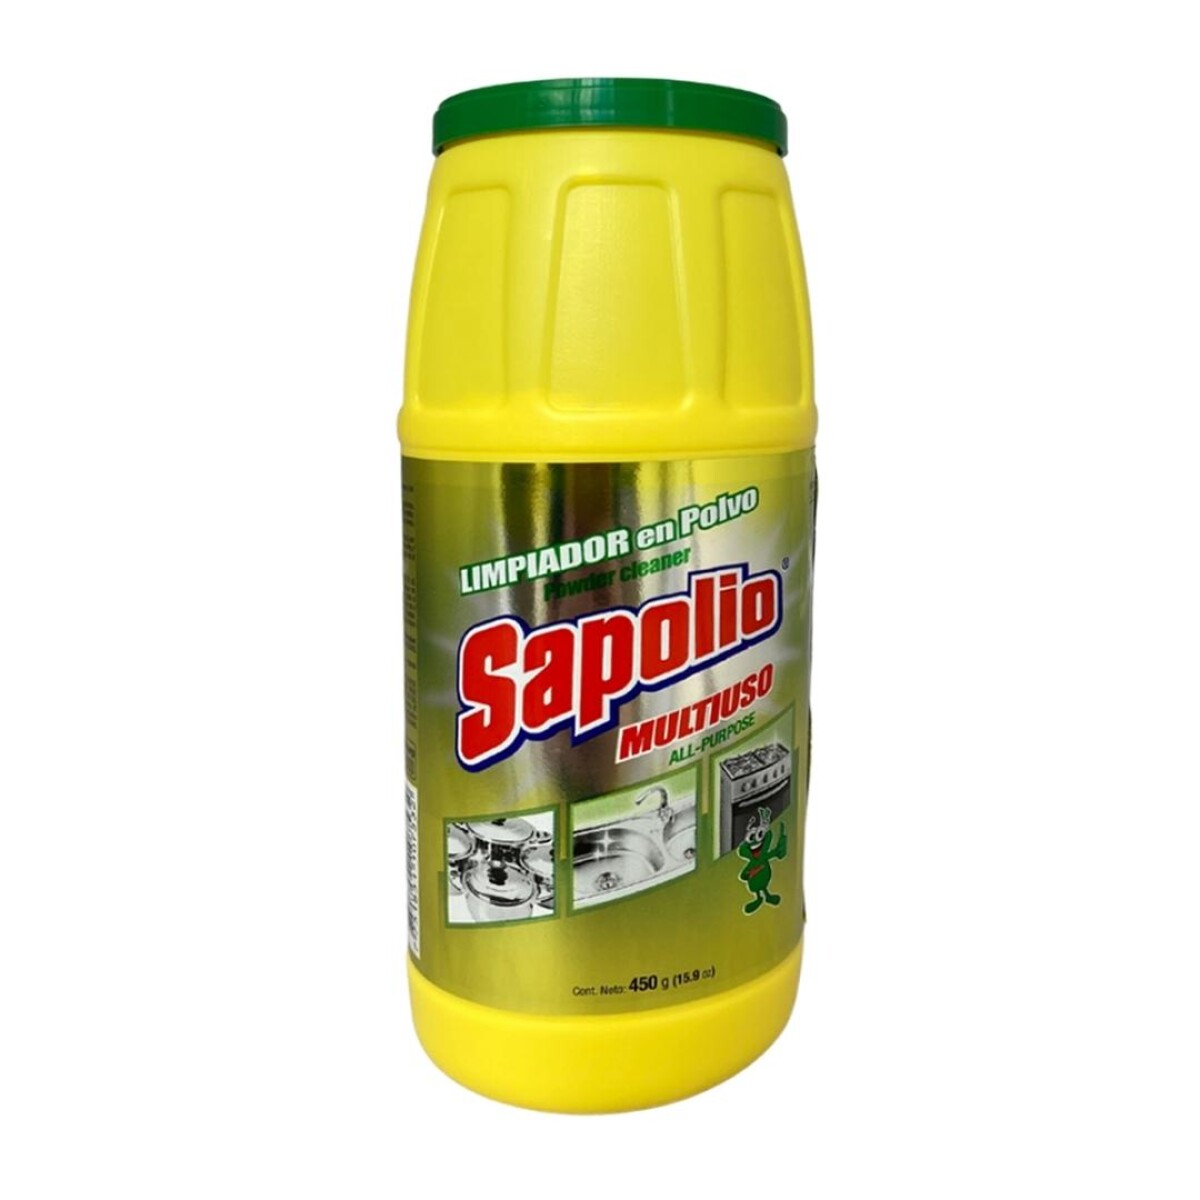 Limpiador en polvo Sapolio 450g 